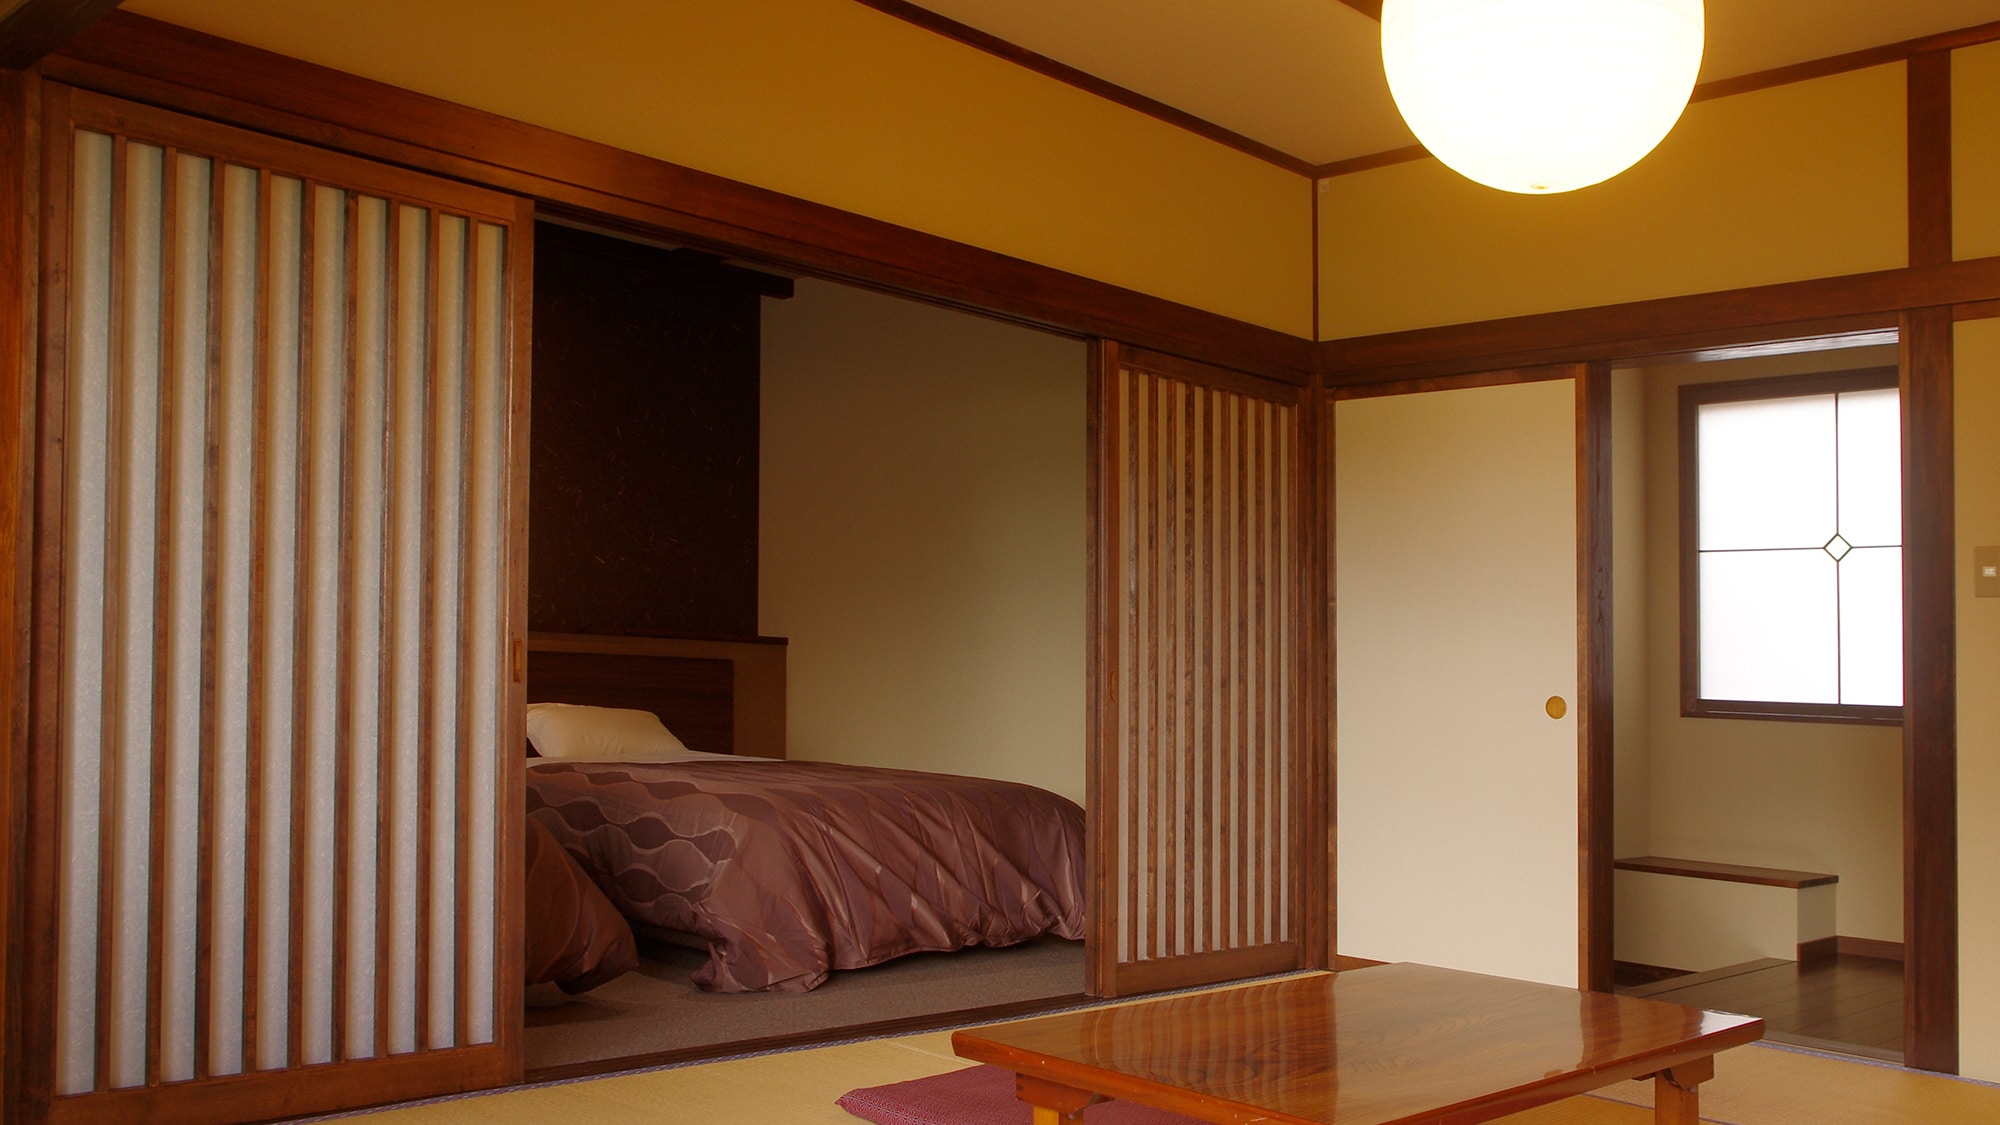 * ห้องญี่ปุ่นและตะวันตก